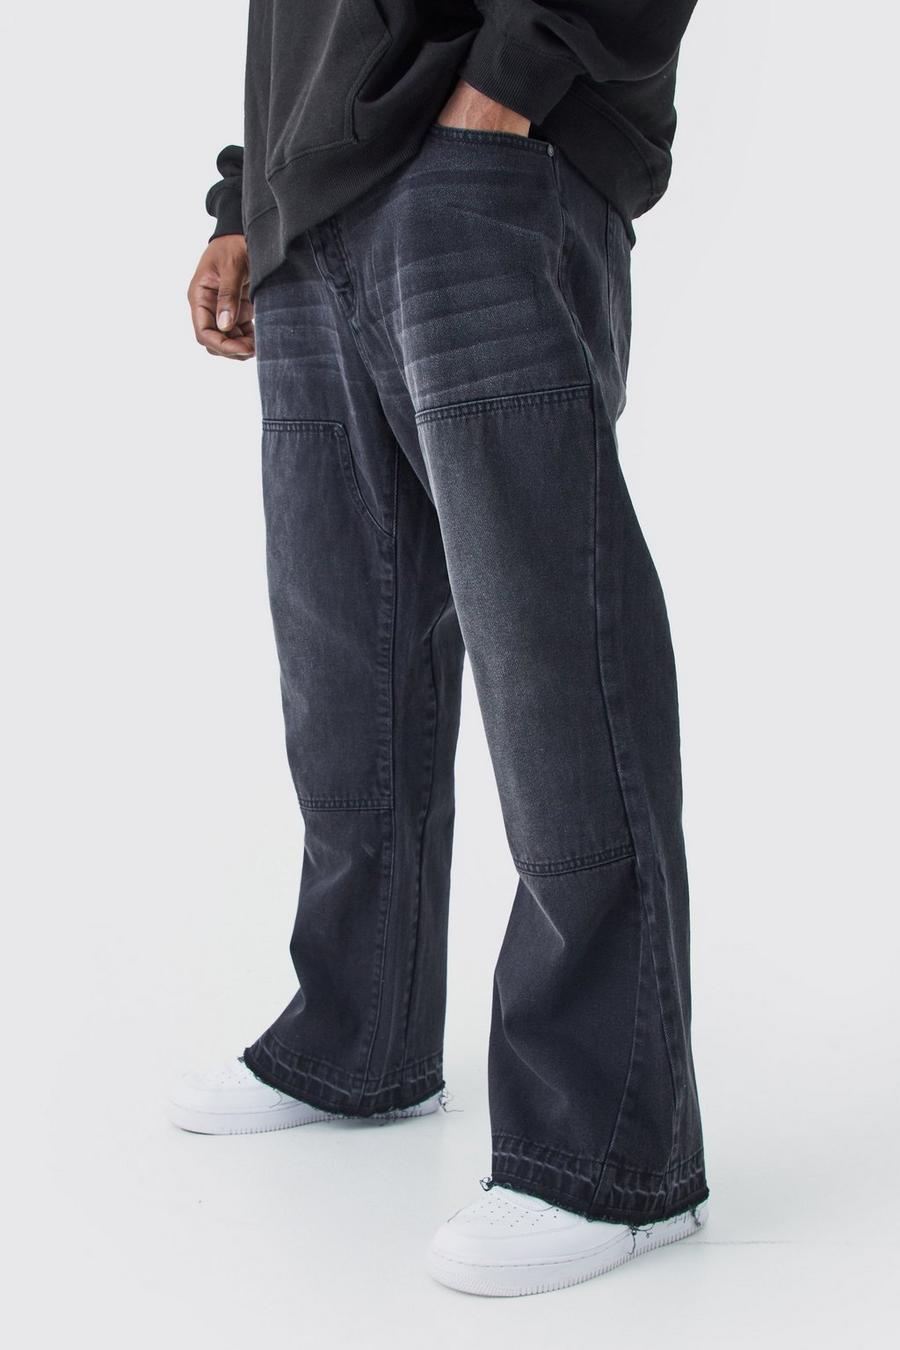 Jeans Plus Size Slim Fit in denim rigido con inserti a zampa, Washed black